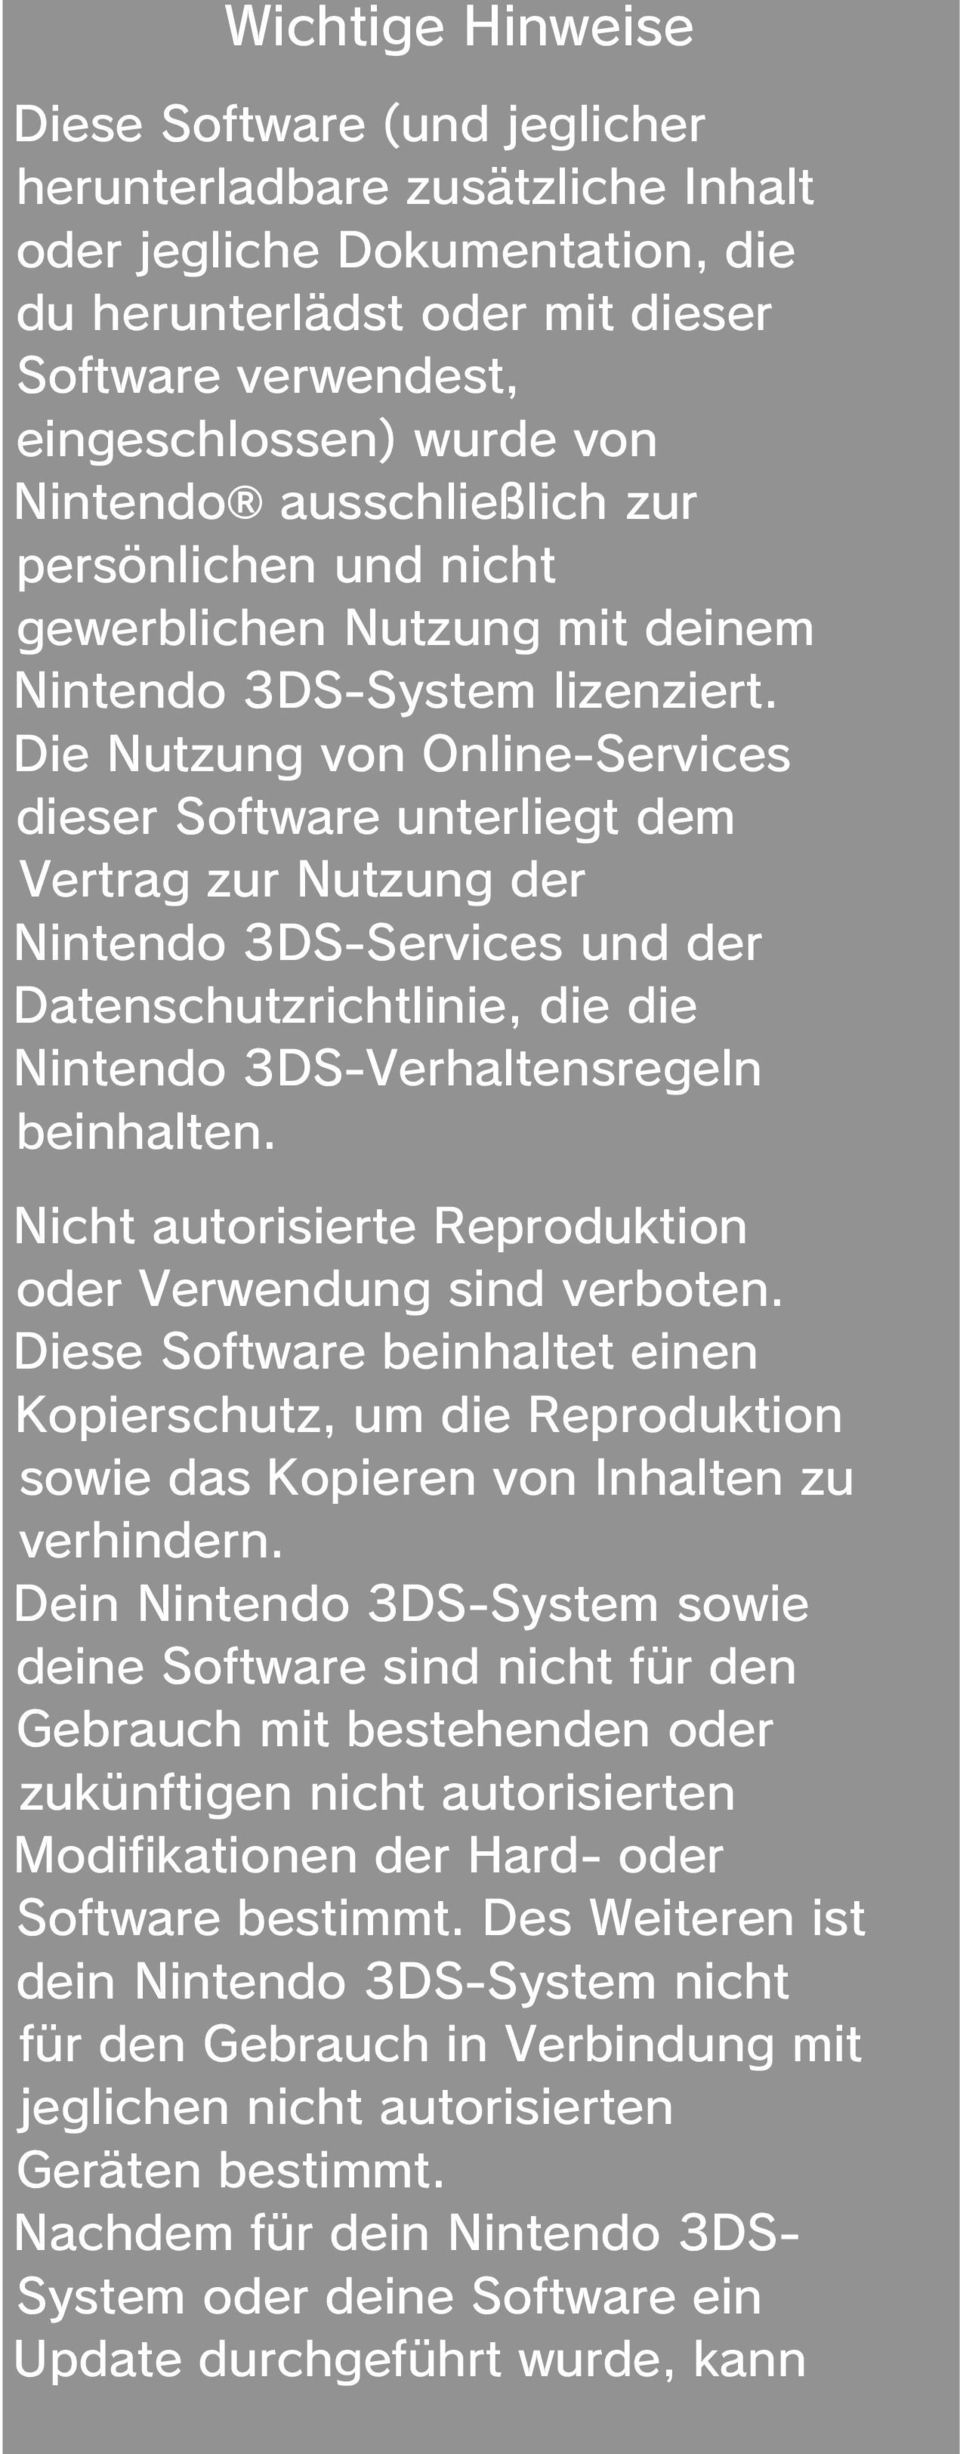 Die Nutzung von Online-Services dieser Software unterliegt dem Vertrag zur Nutzung der Nintendo 3DS-Services und der Datenschutzrichtlinie, die die Nintendo 3DS-Verhaltensregeln beinhalten.